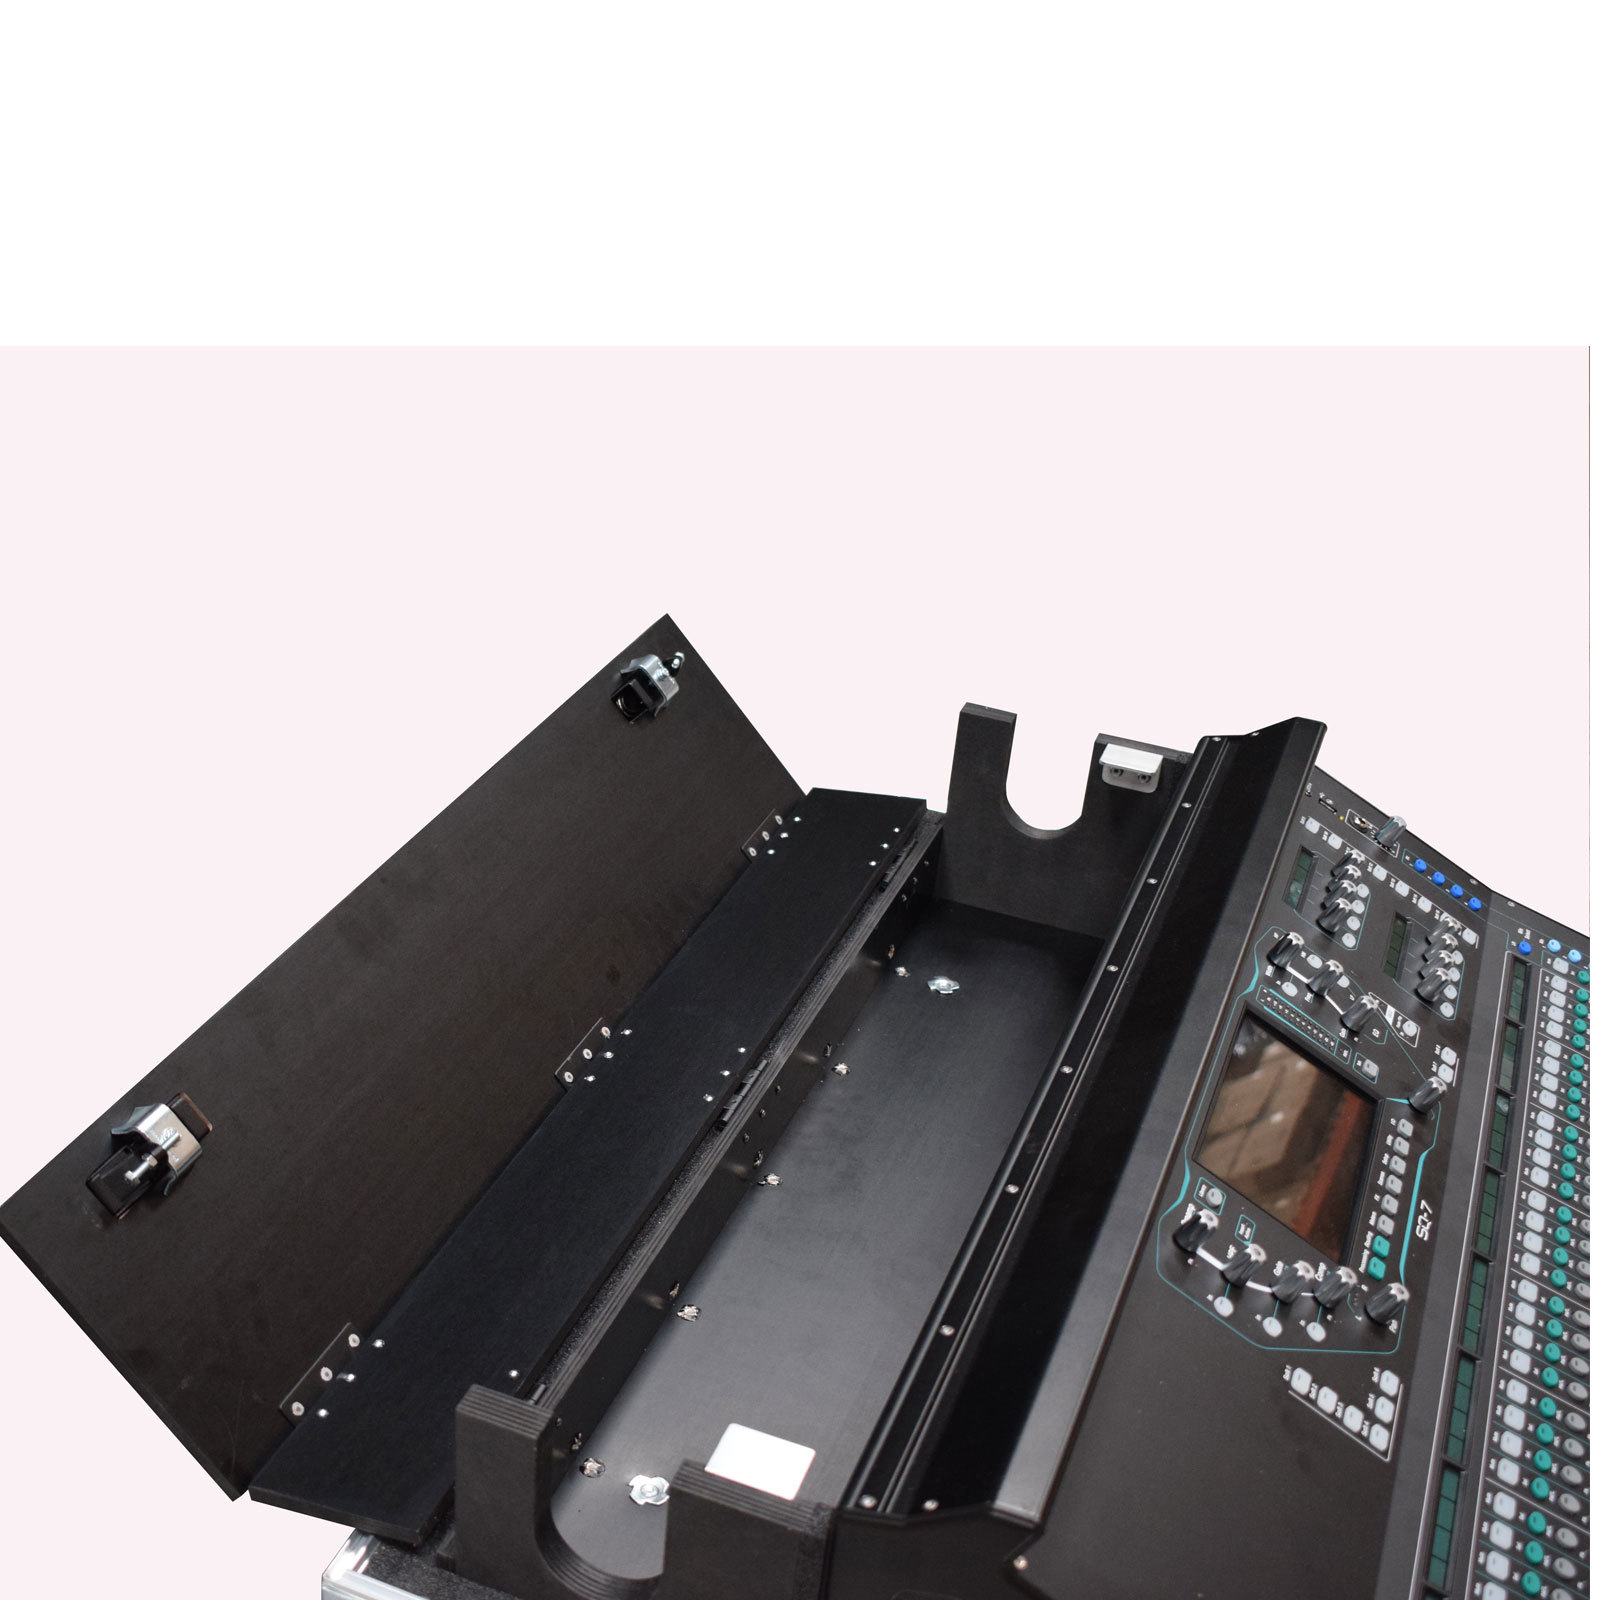 SQ-7 Digital Mixer Flightcase With Dog Box And Castors